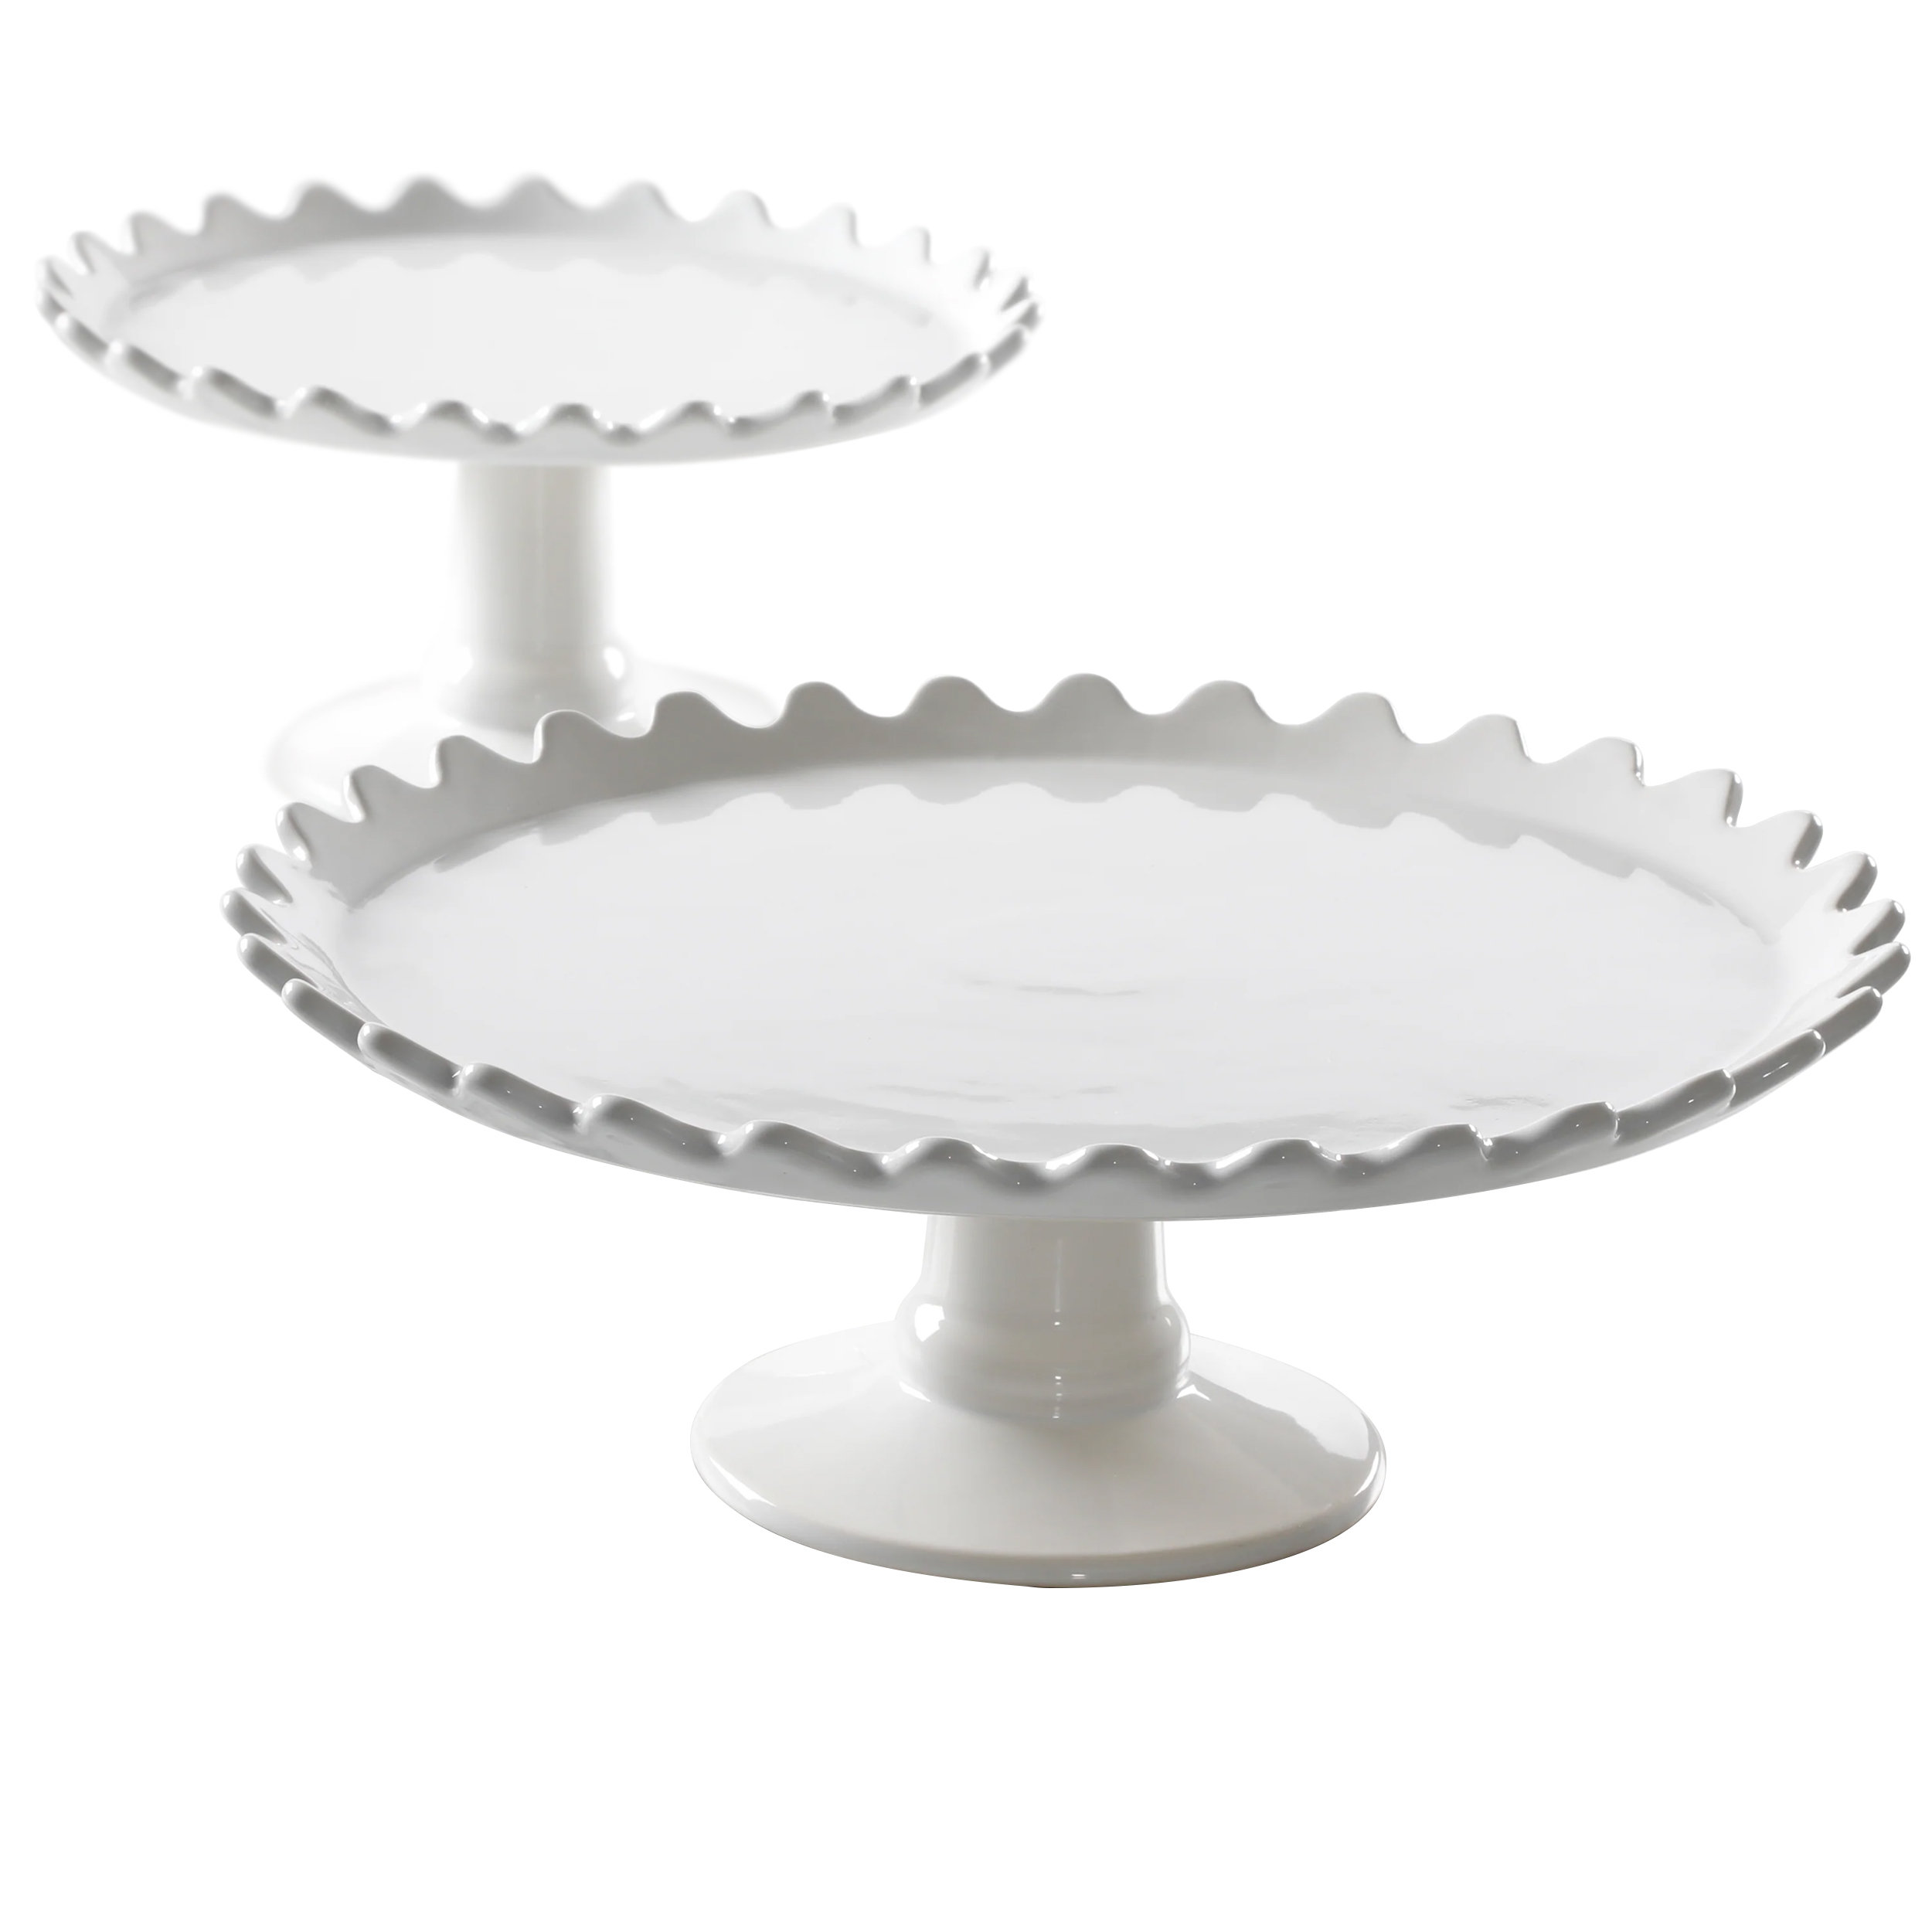 https://assets.wfcdn.com/im/18218334/compr-r85/2188/218853803/martha-stewart-2-piece-stoneware-cake-stand-set-in-white.jpg